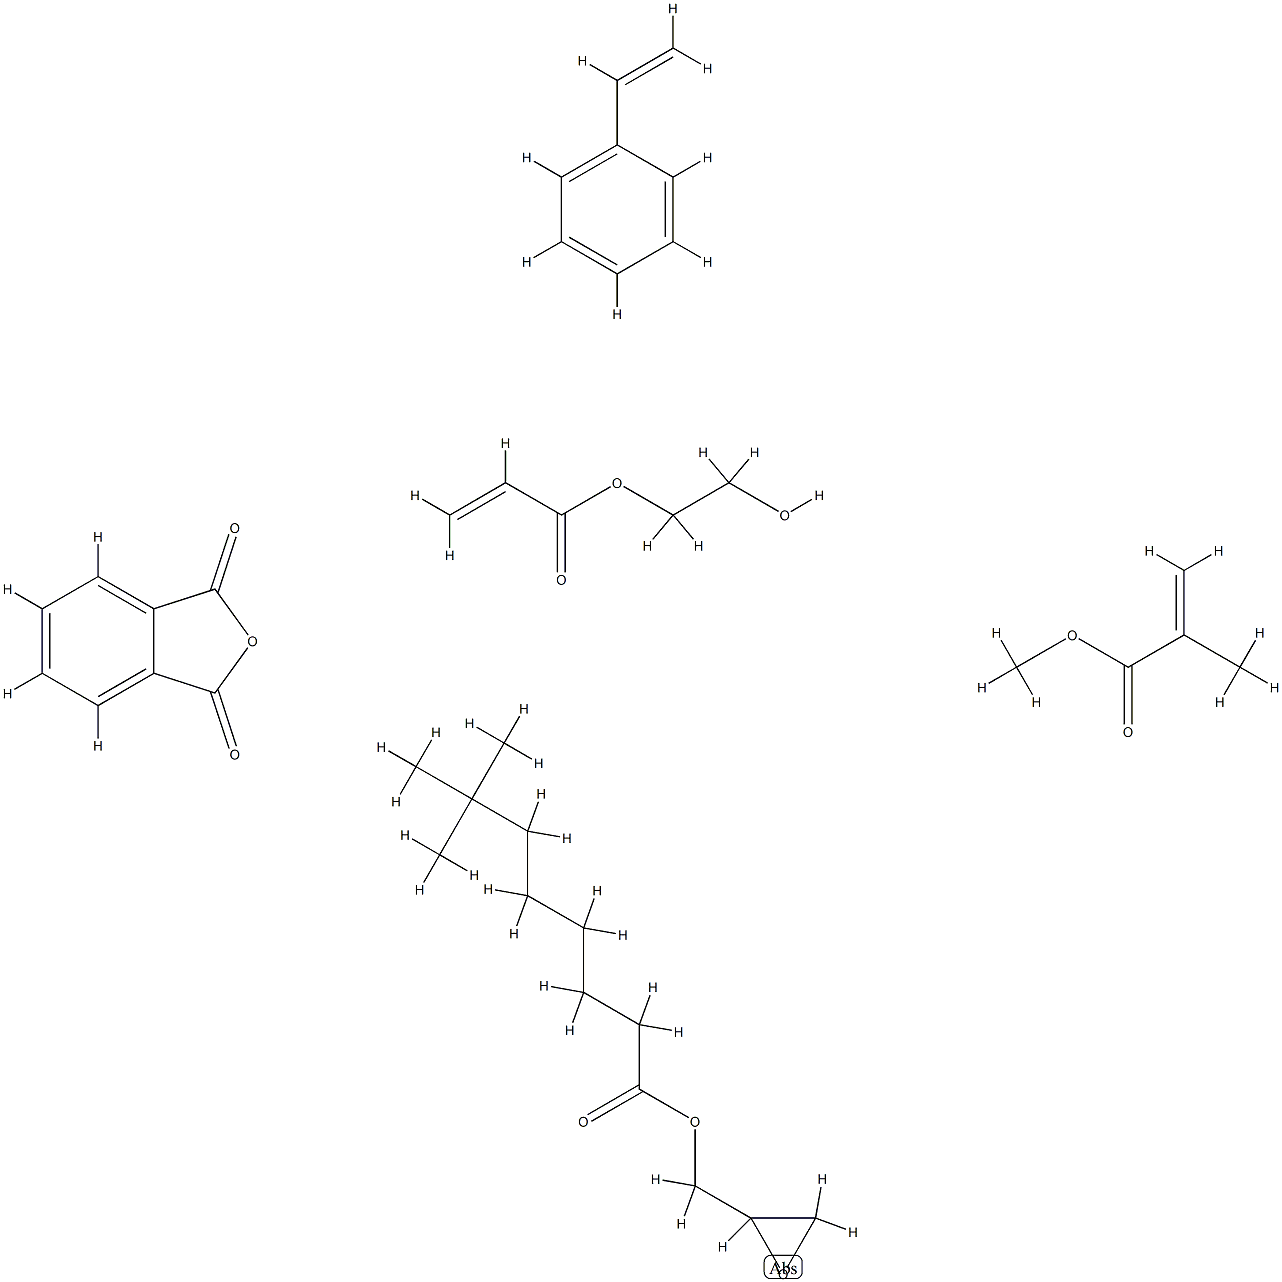 80010-53-3 新癸酸(环氧乙烷基甲)酯与苯乙烯、丙烯酸(2-羟基乙)酯、1,3-异苯并呋喃二酮和2-甲基丙烯酸甲酯的聚合物